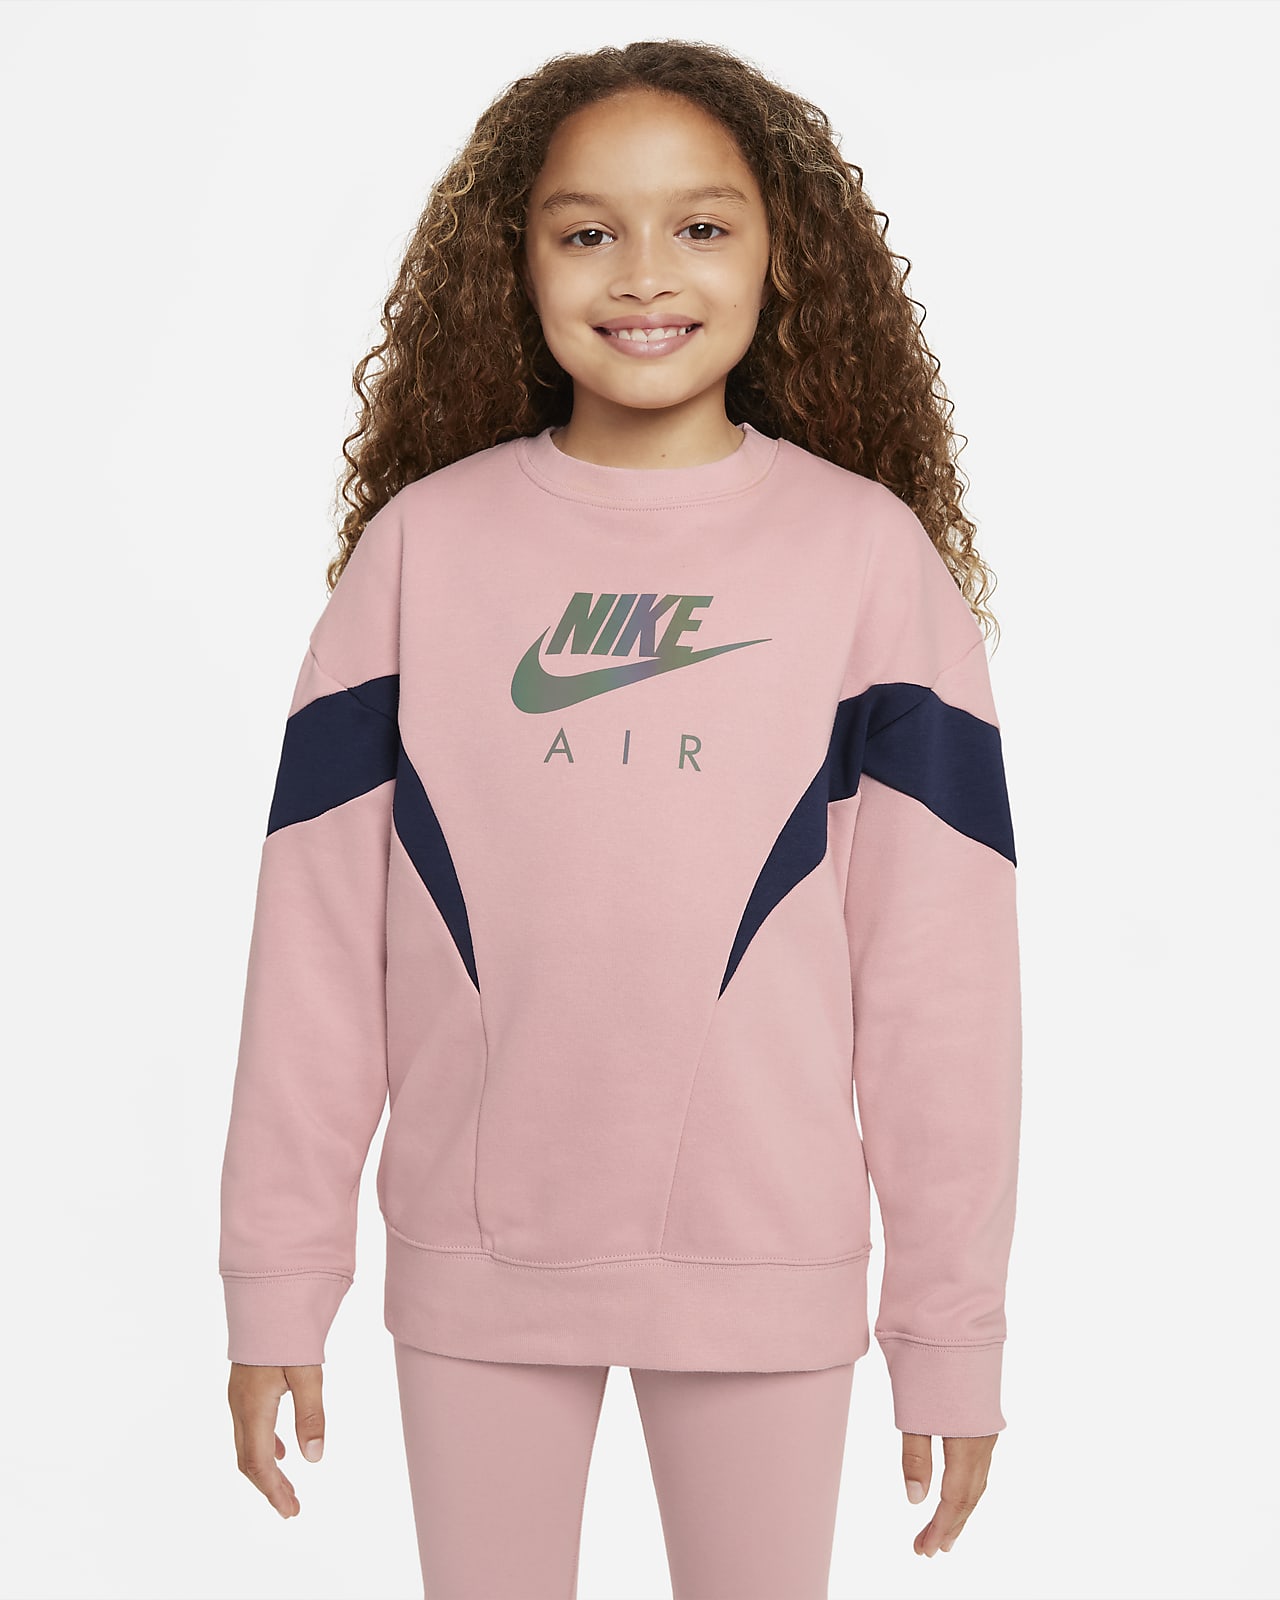 Nike Air Sweatshirt aus French-Terry-Material für ältere Kinder (Mädchen)